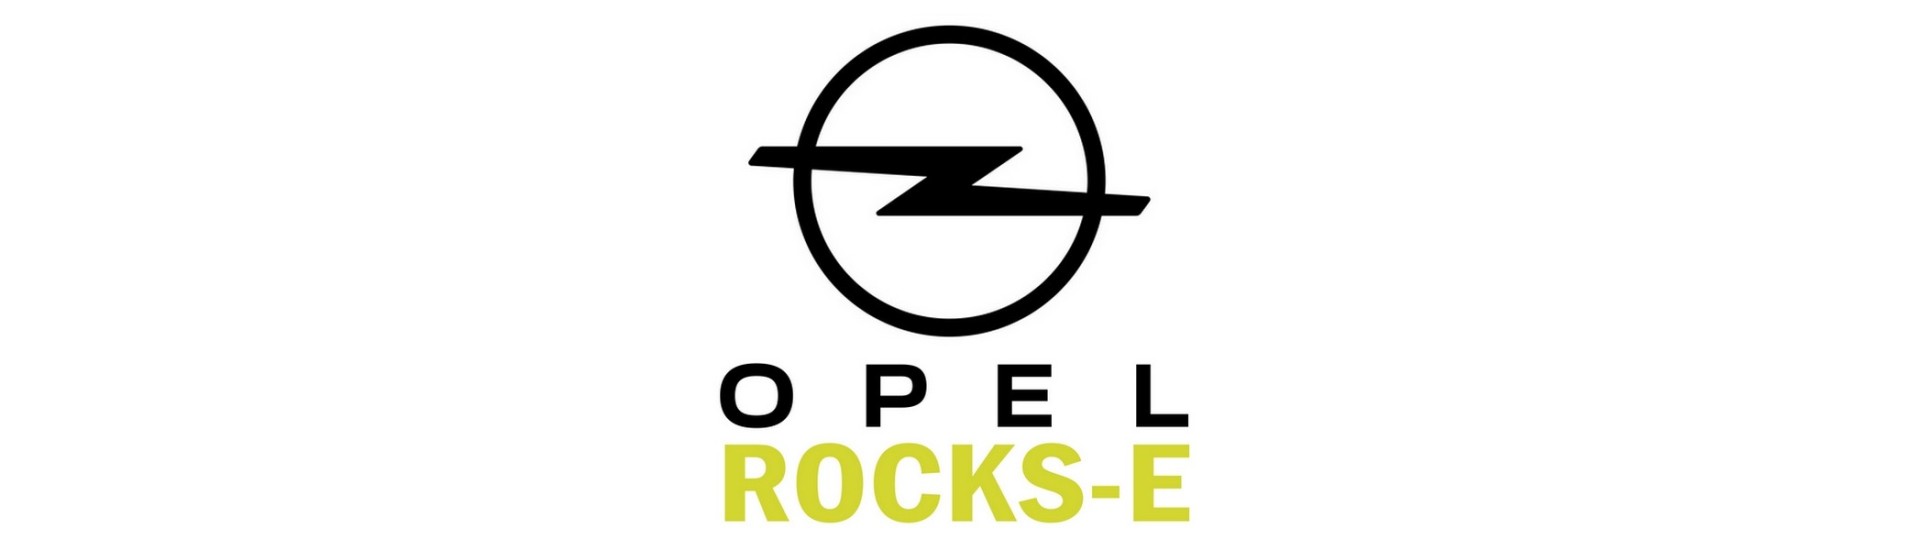 Rotule de direction pour voiture sans permis Opel Rocks-E